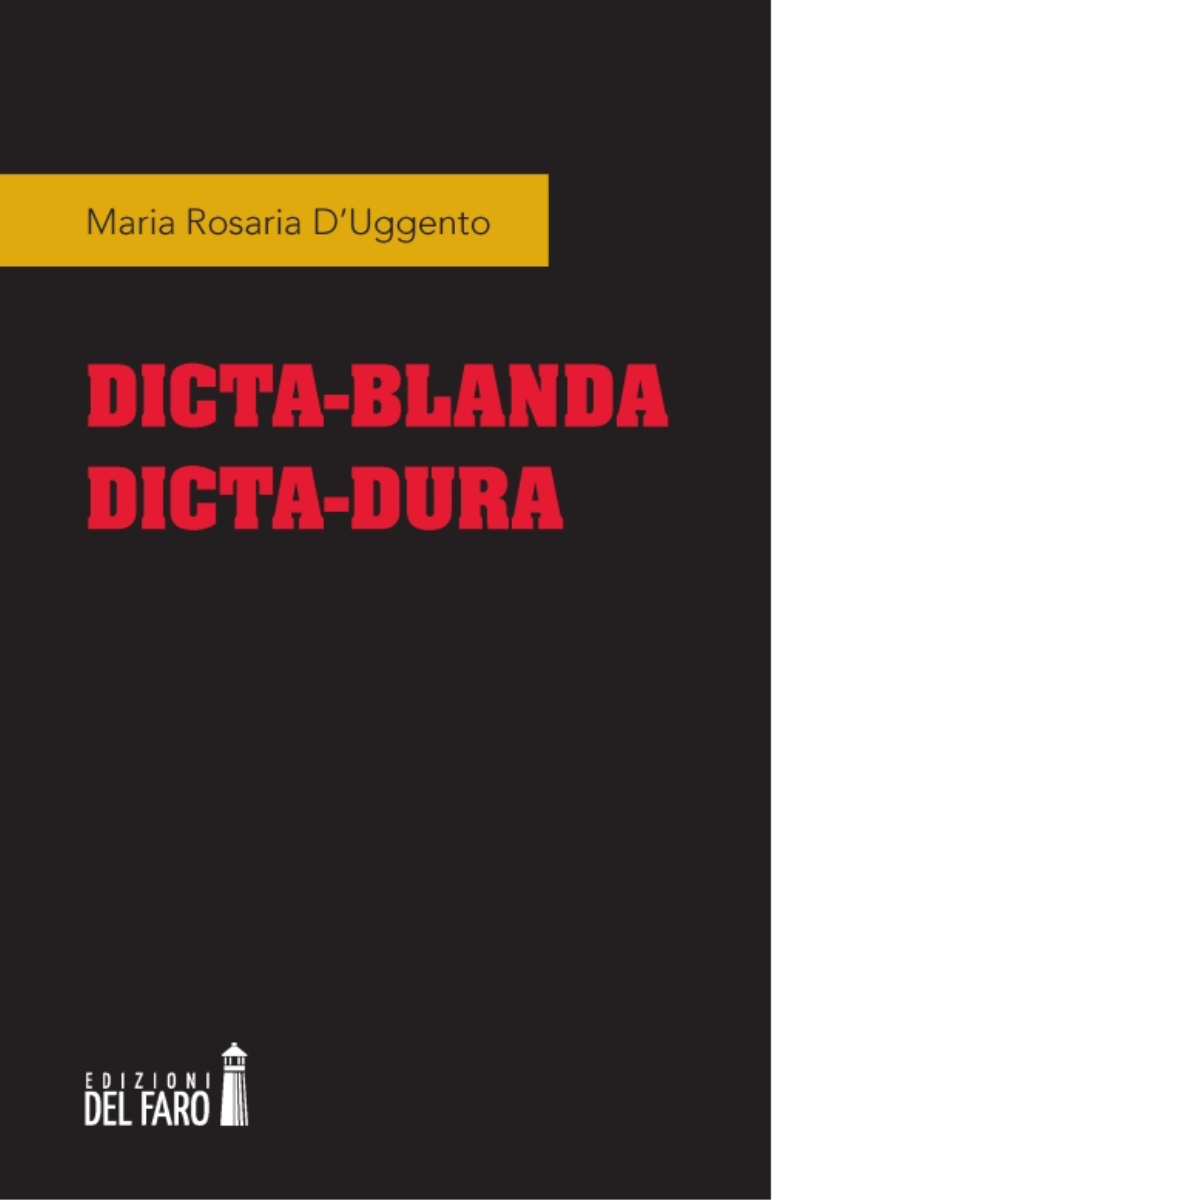 Dicta-blanda dicta-dura di D'Uggento Maria Rosaria - Del Faro, 2015 libro usato